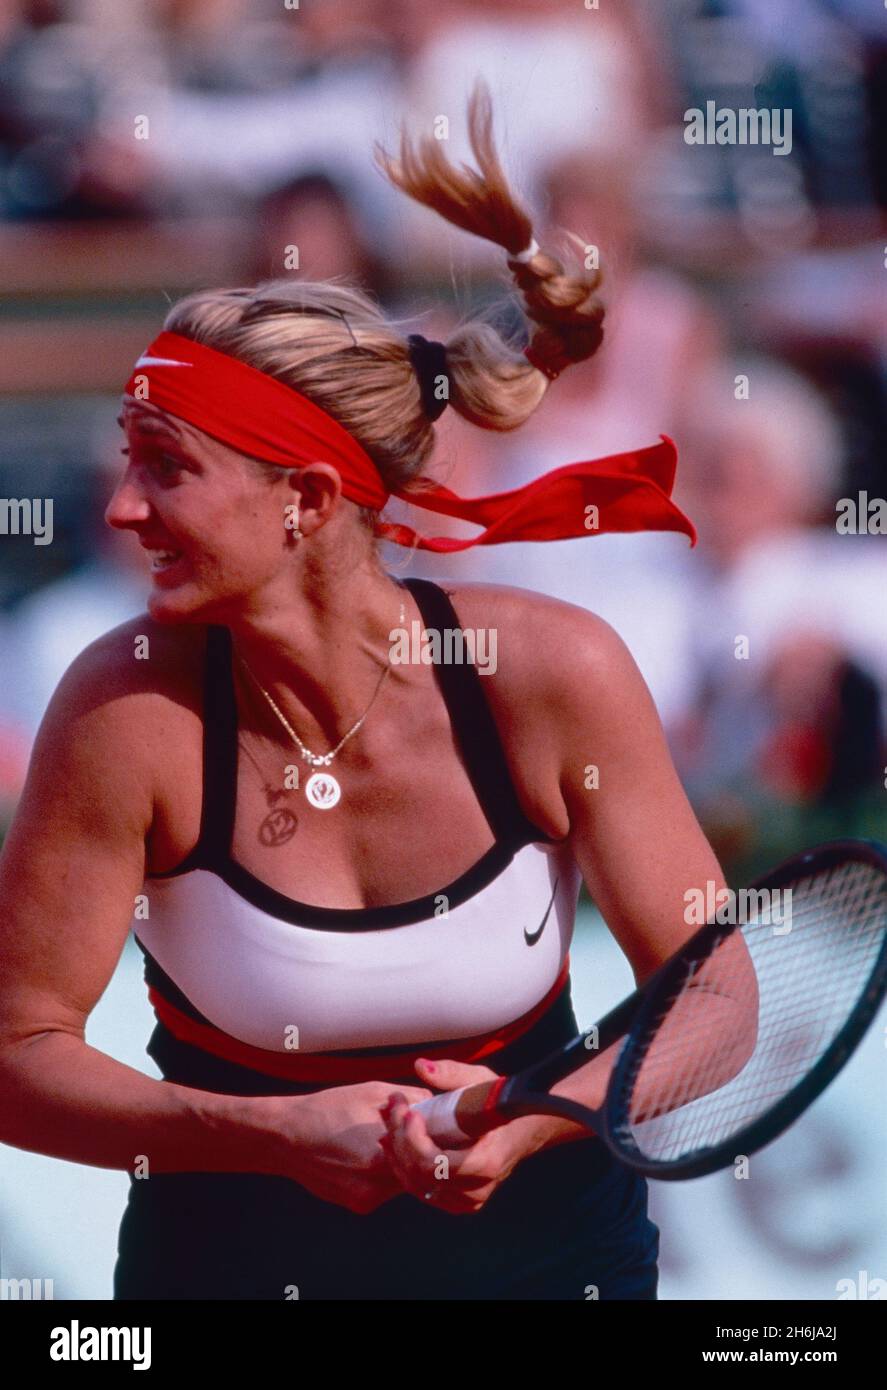 Kanadisch-amerikanisch-französische Tennisspielerin Mary Pierce, 1990er Jahre Stockfoto